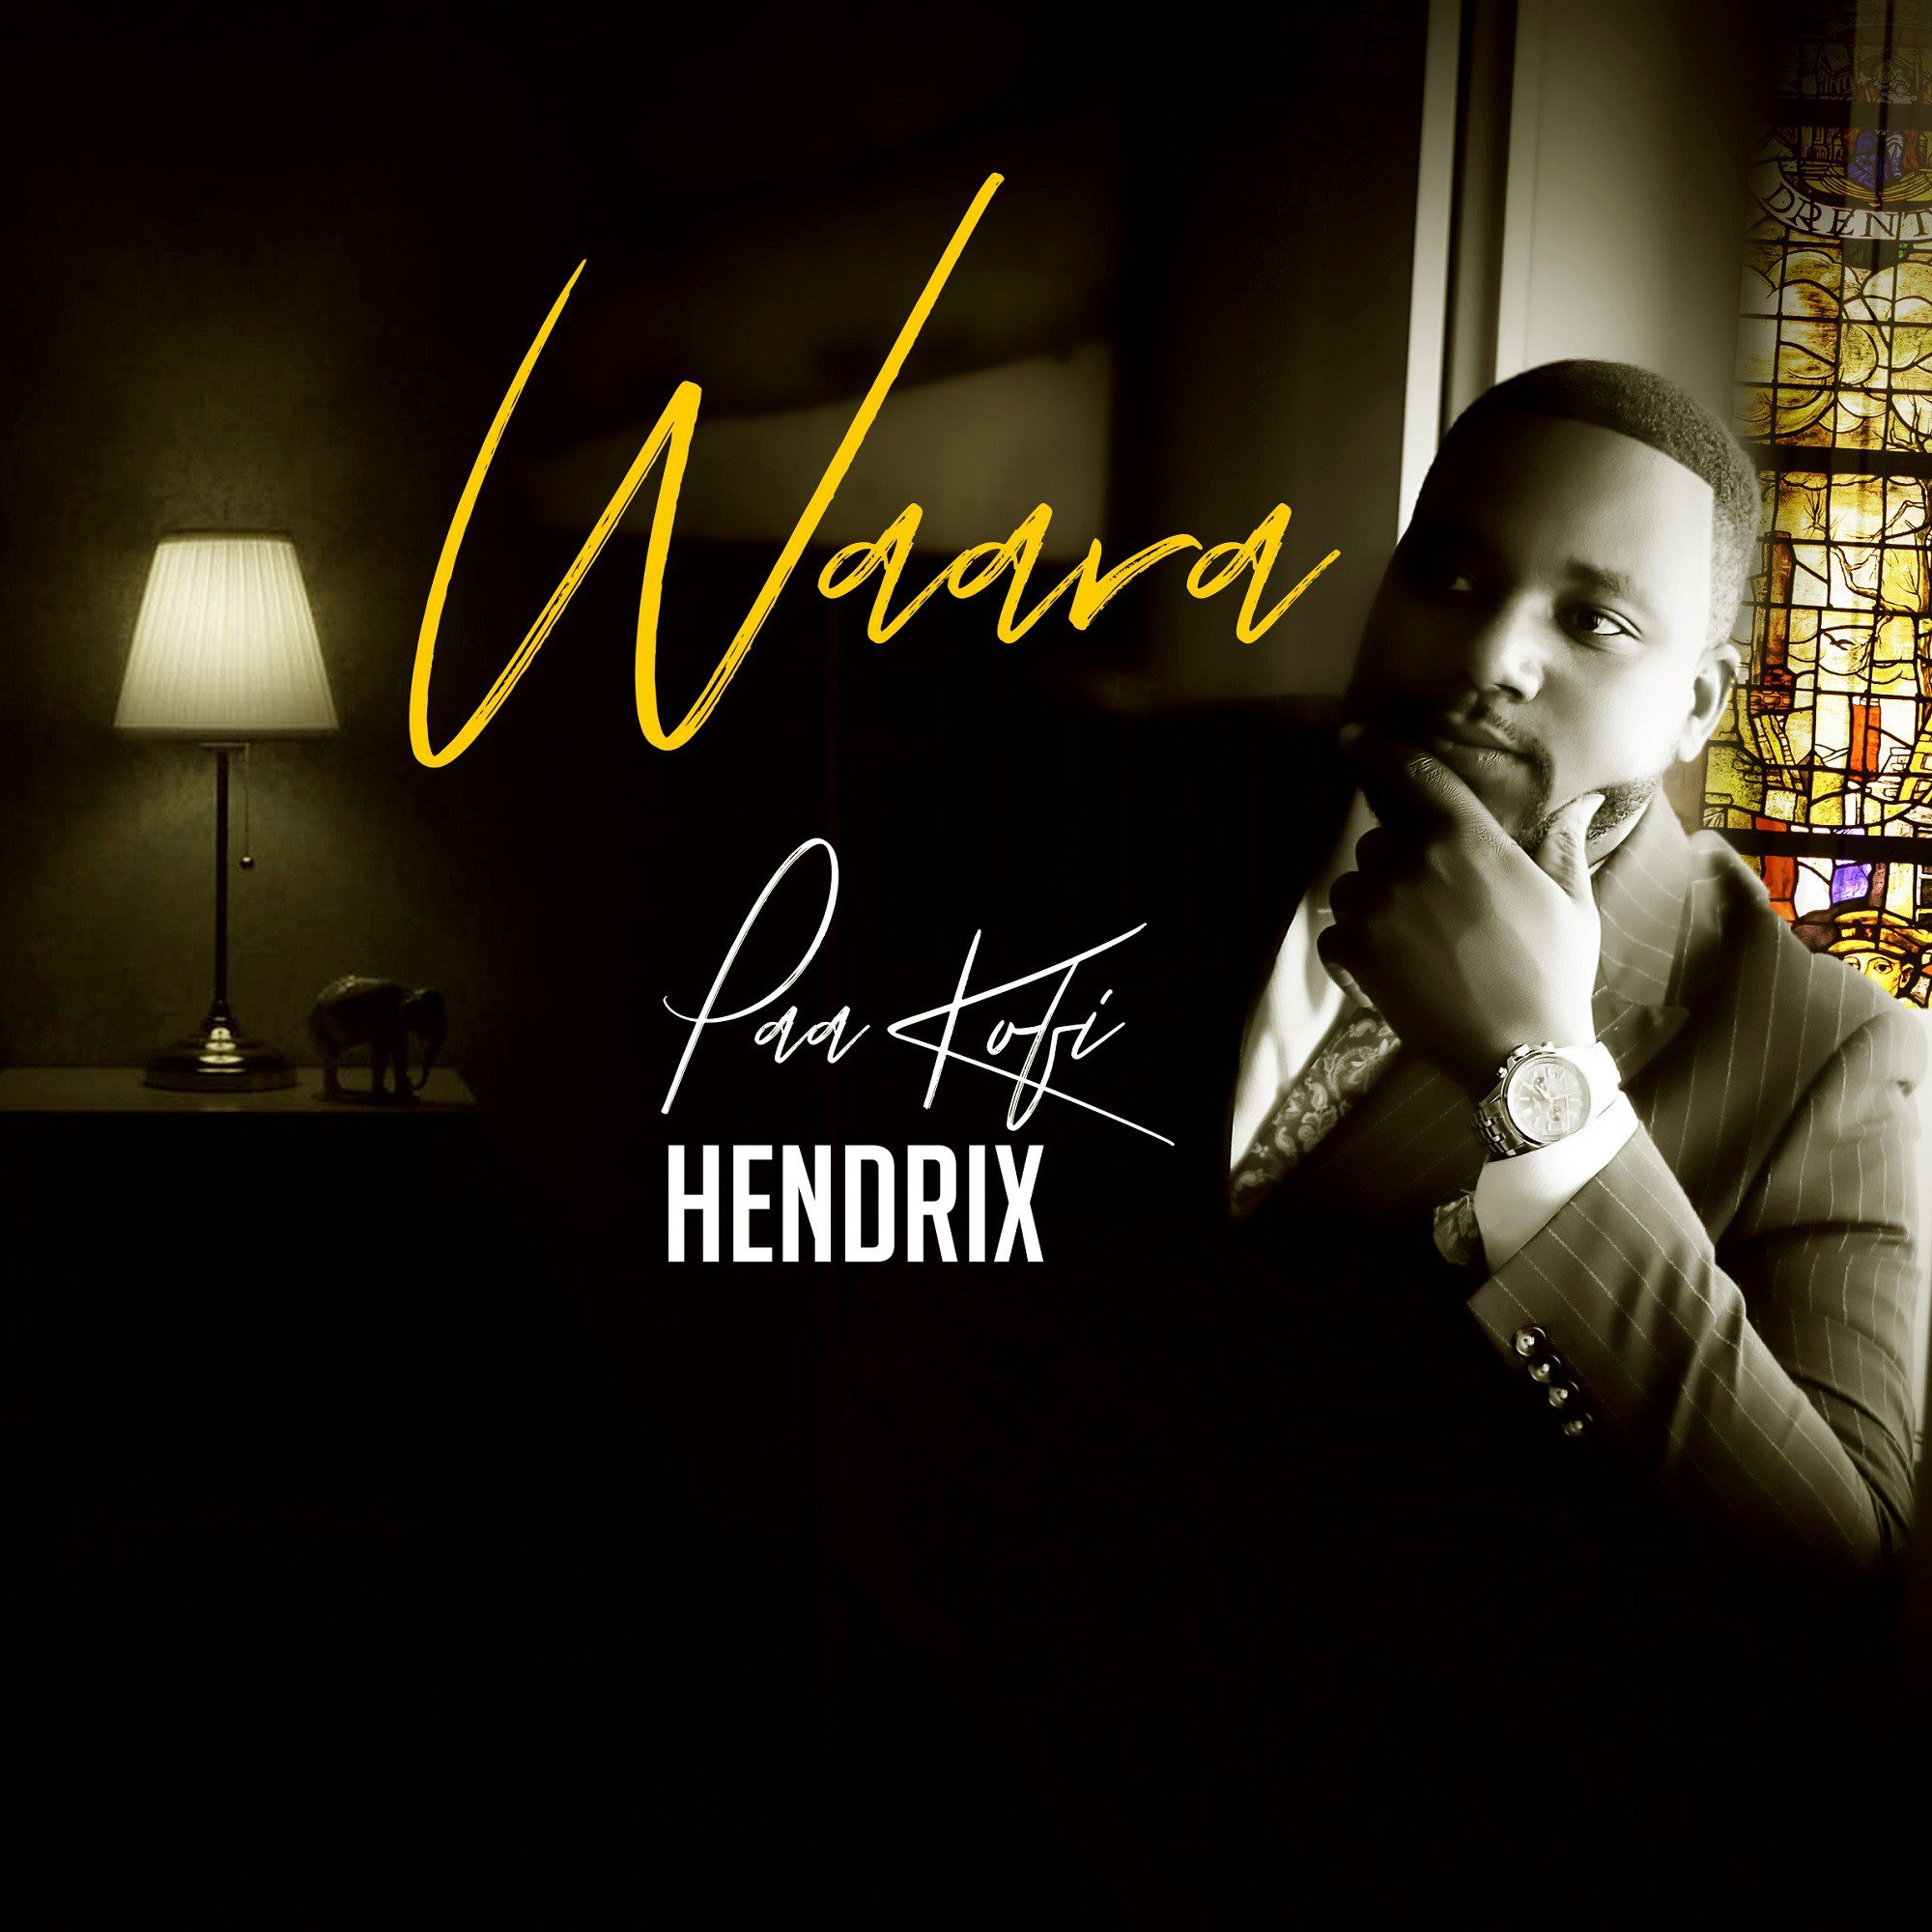 Paa Kofi Hendrix drops new gospel single, Waara